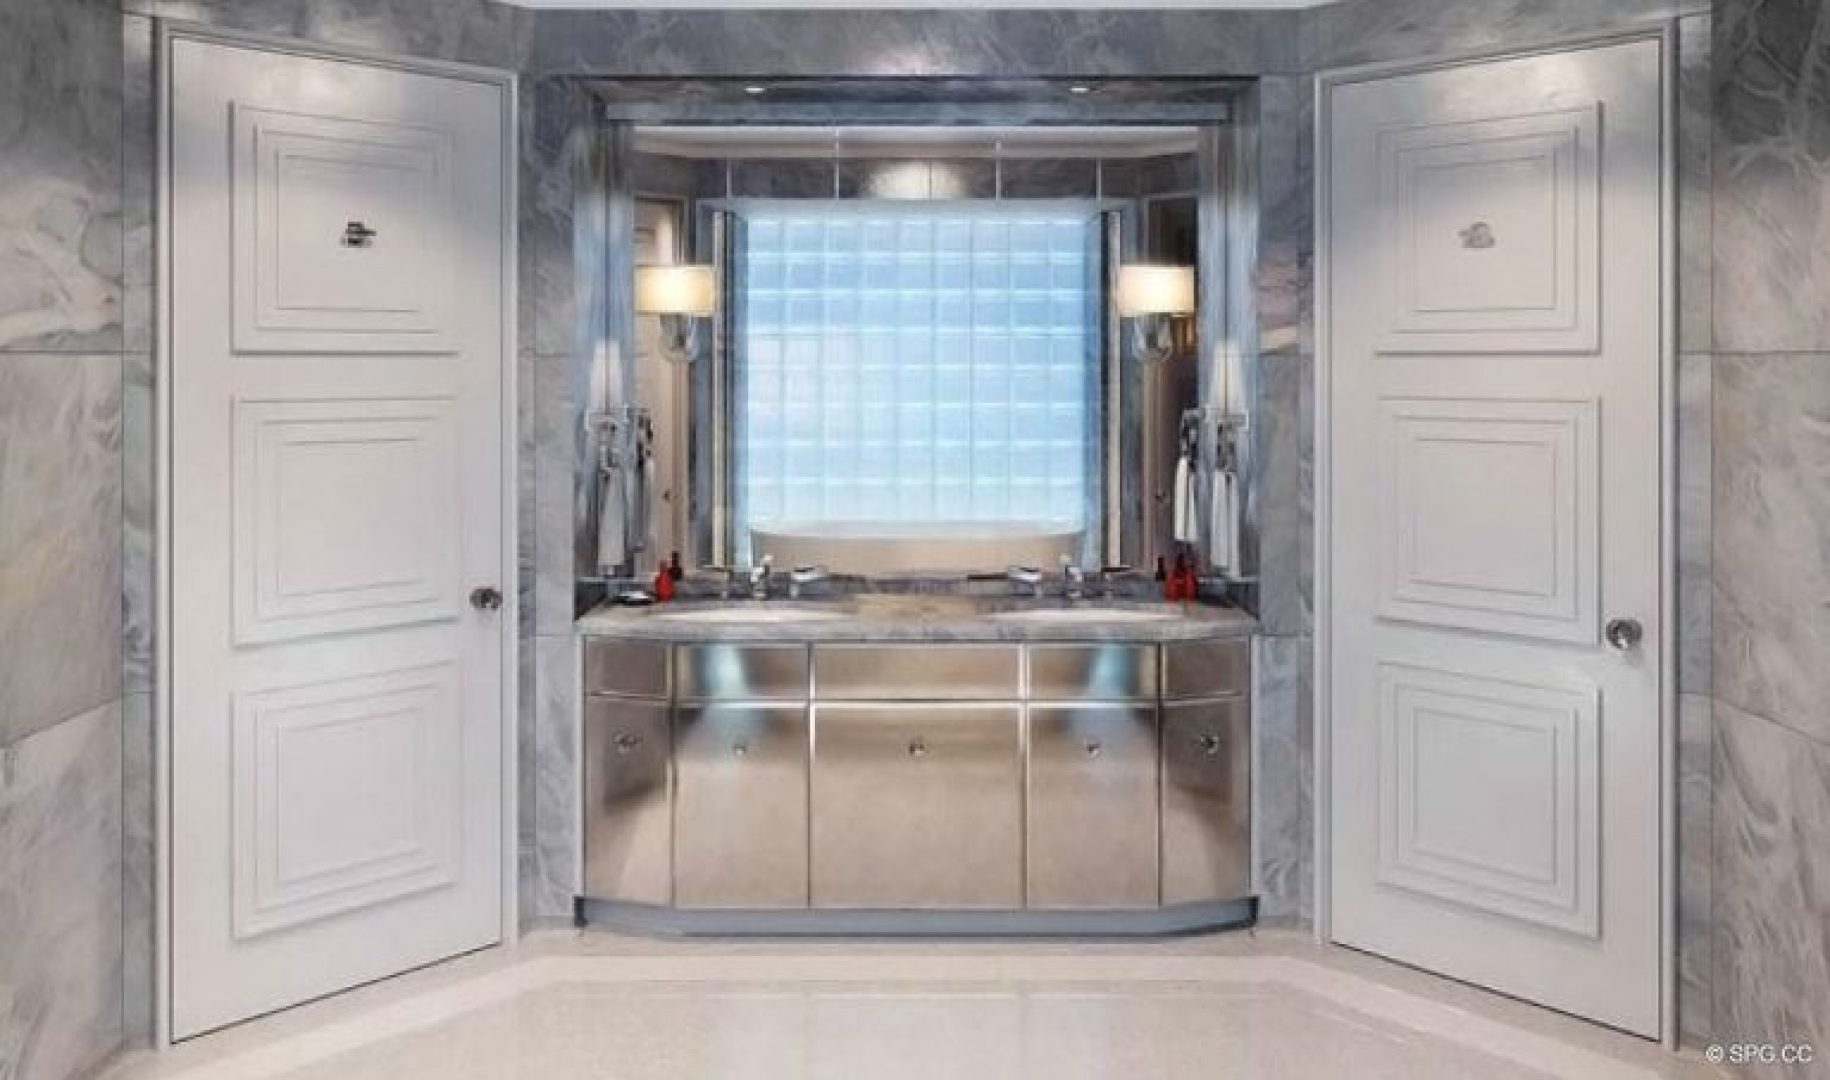 Bathroom Concept for Faena Versailles Classic, Luxury Oceanfront Condos in Miami Beach, Florida 33140